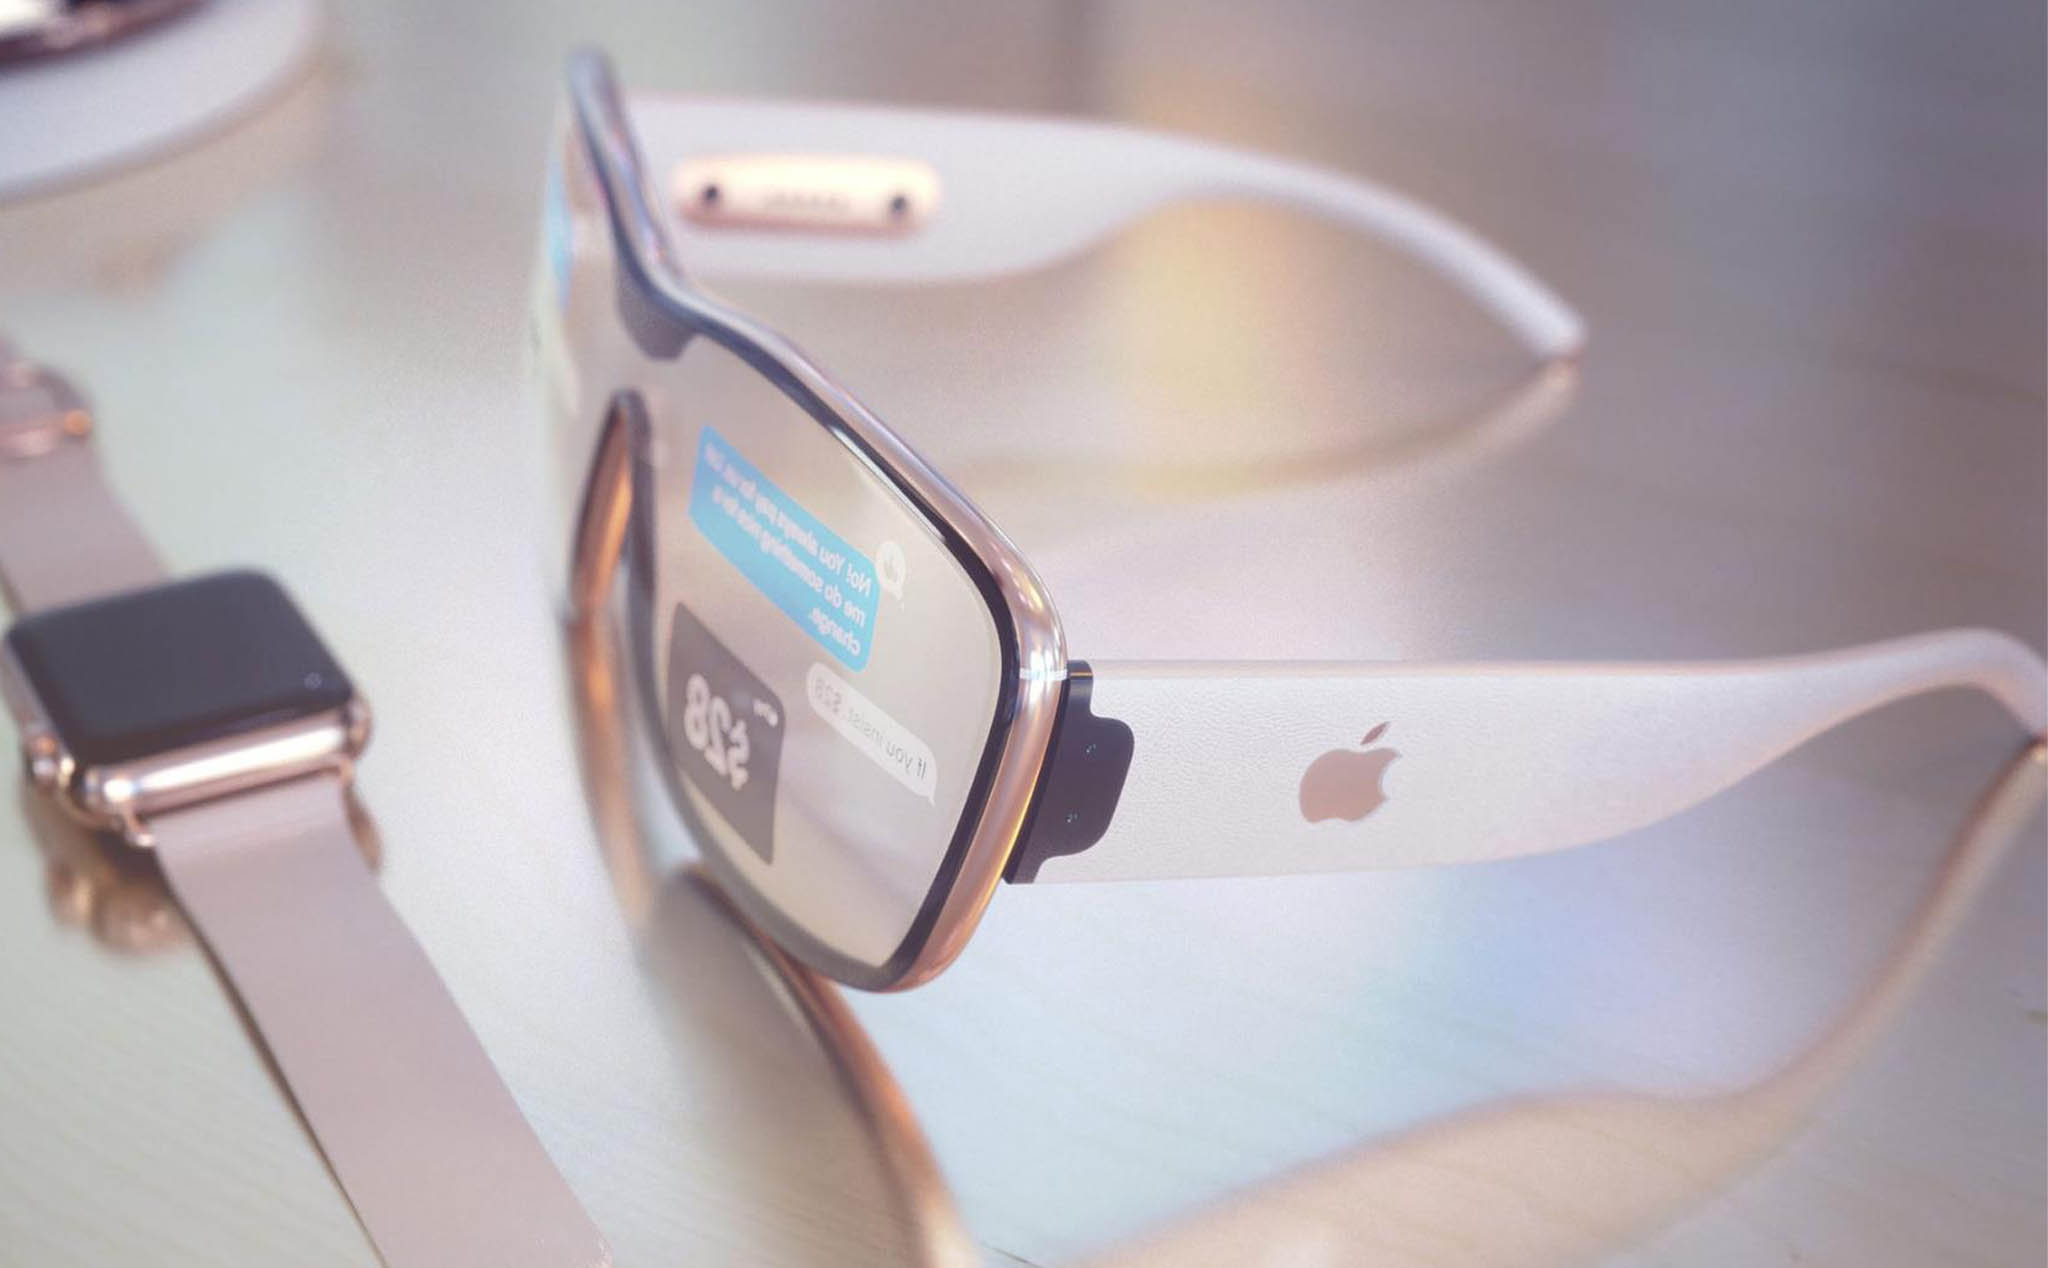 Bloomberg: Apple sẽ nhảy vào thị trường thực tế ảo tăng cường trong năm 2020 với cặp kính AR